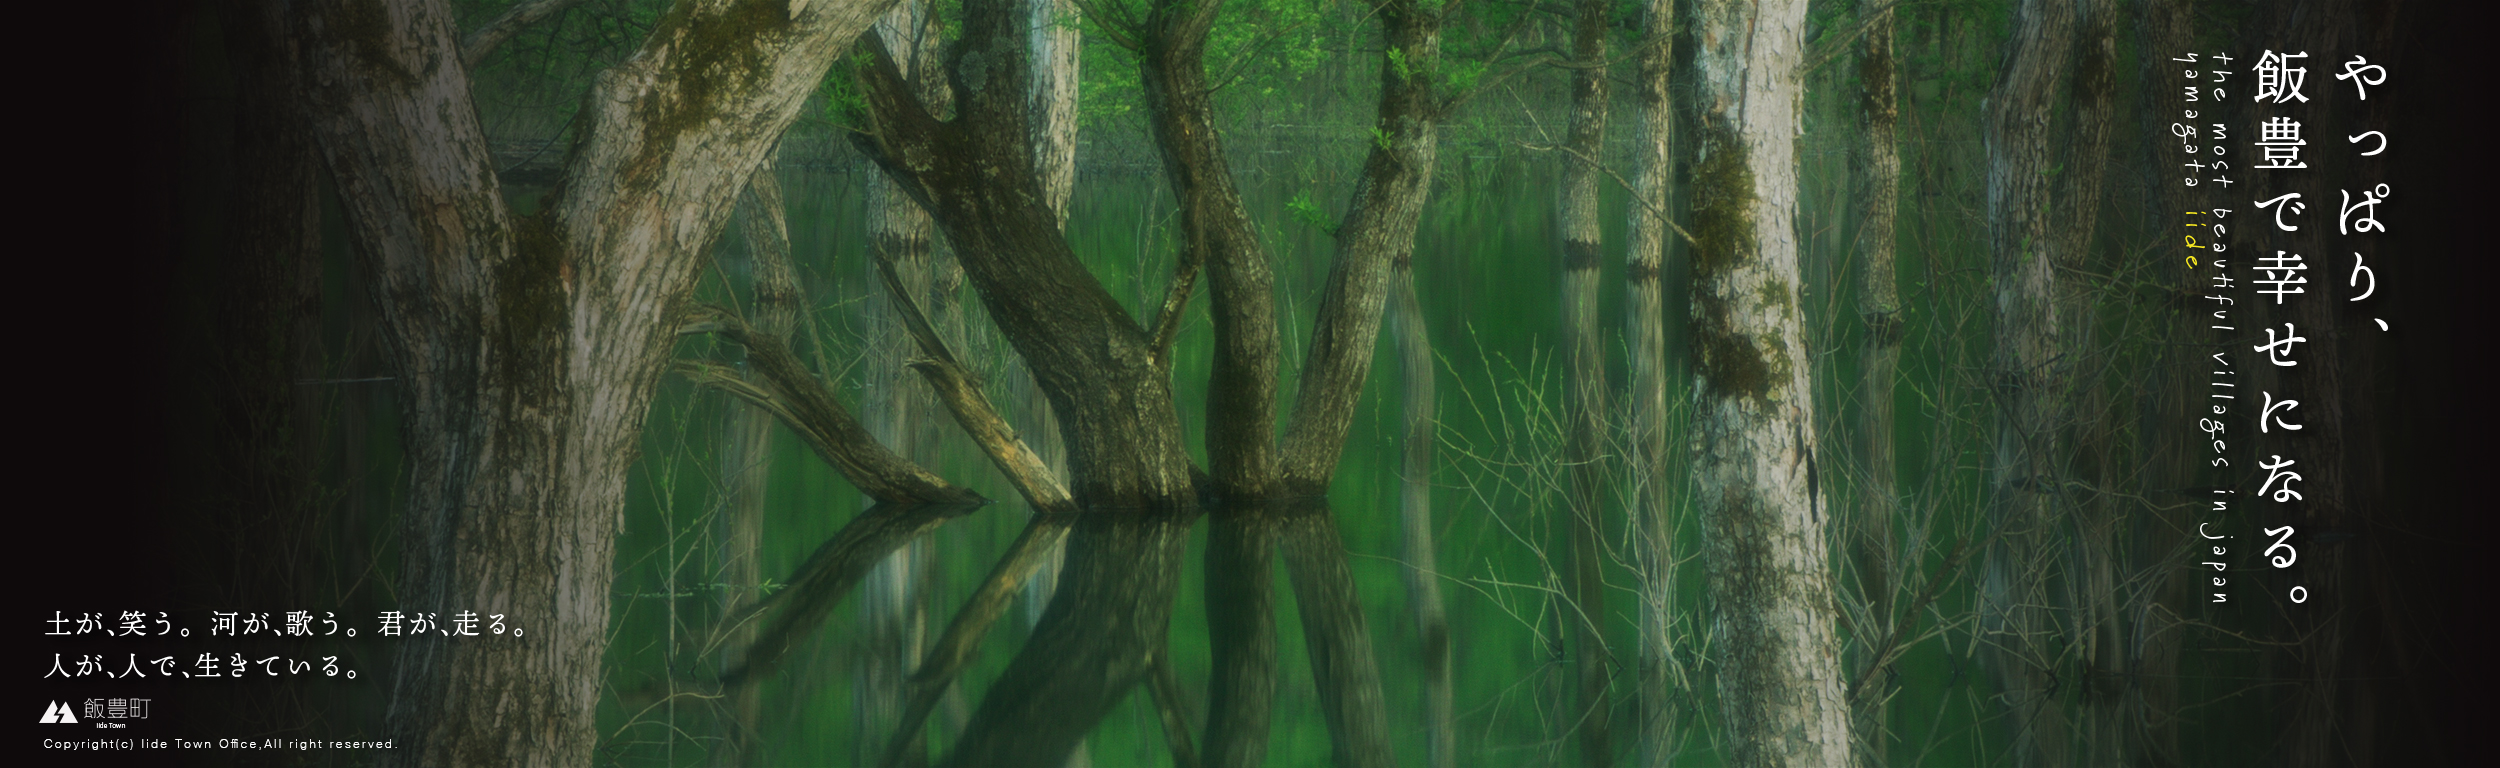 スポーツ ベット カジノ
白川湖の水没林スライドバナー画像